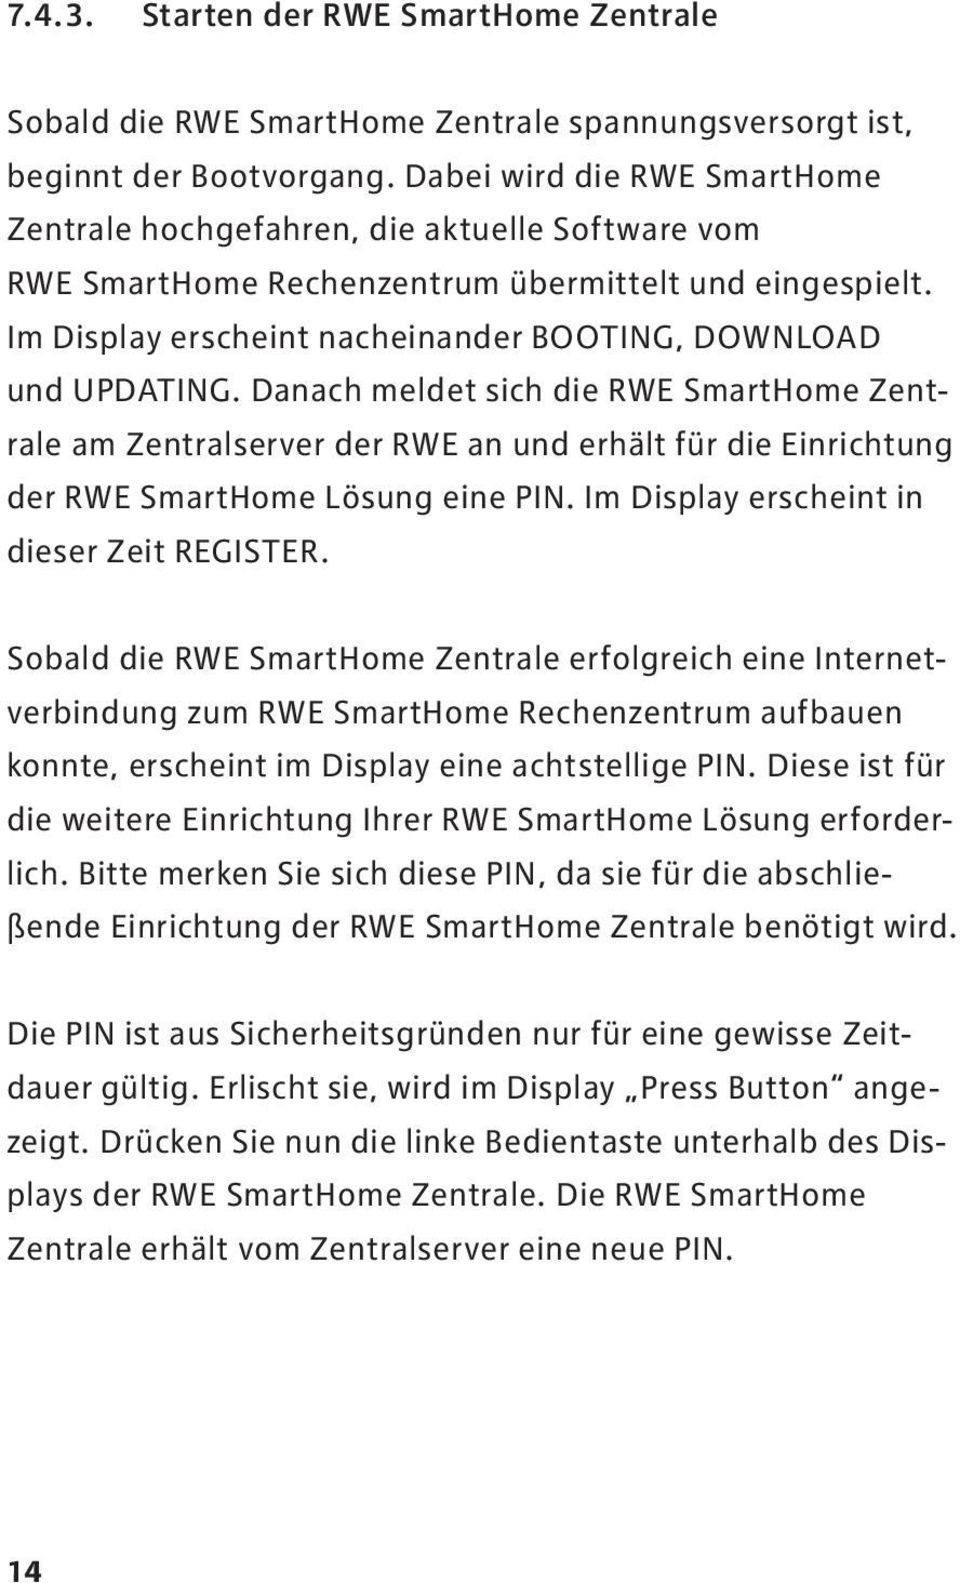 Danach meldet sich die RWE SmartHome Zentrale am Zentralserver der RWE an und erhält für die Einrichtung der RWE SmartHome Lösung eine PIN. Im Display erscheint in dieser Zeit Register.